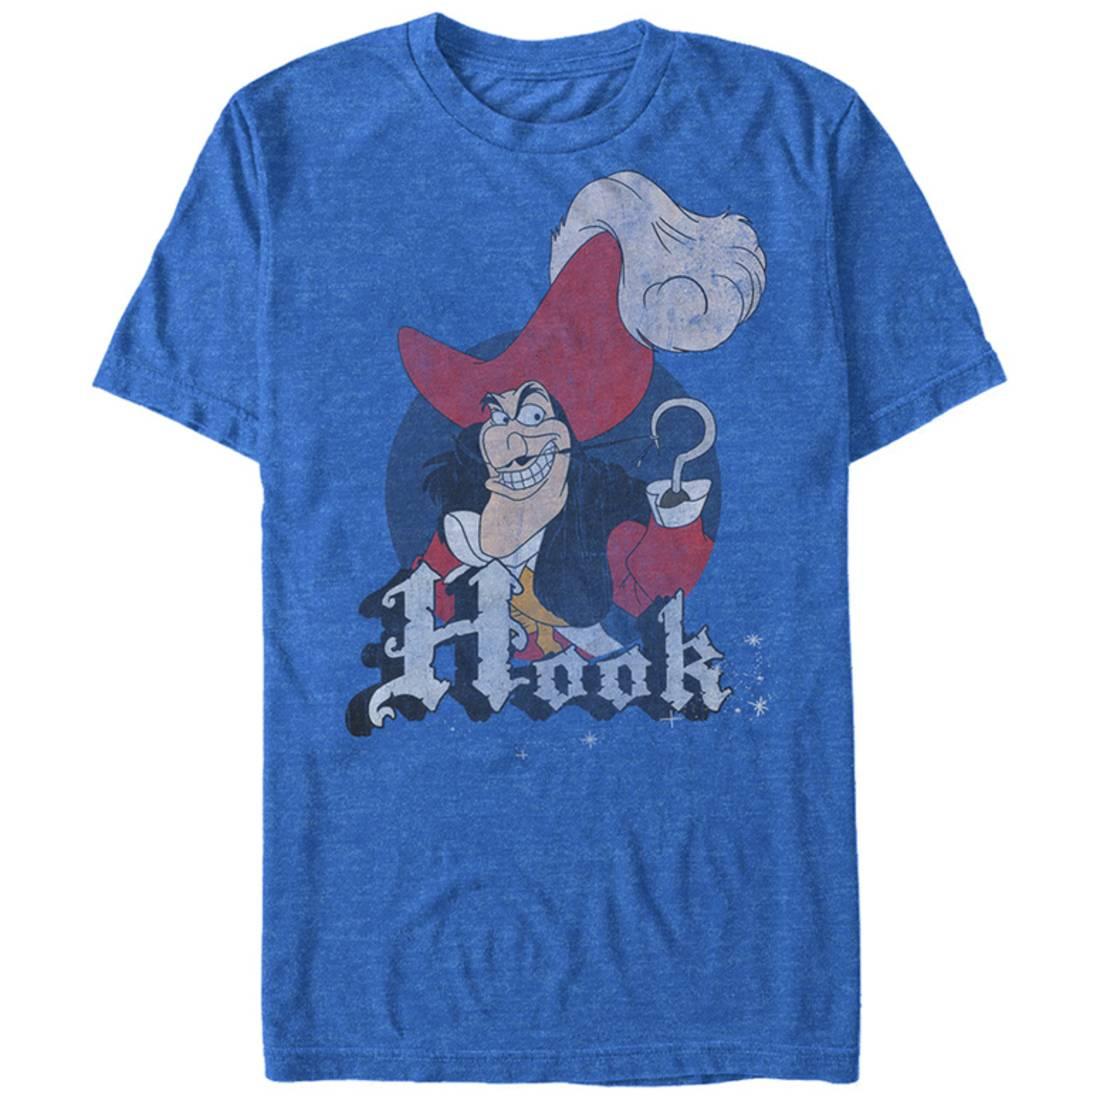 Disney: Peter Pan- Captain Hook Pin Apparel T-Shirt - Blue - image 1 of 4